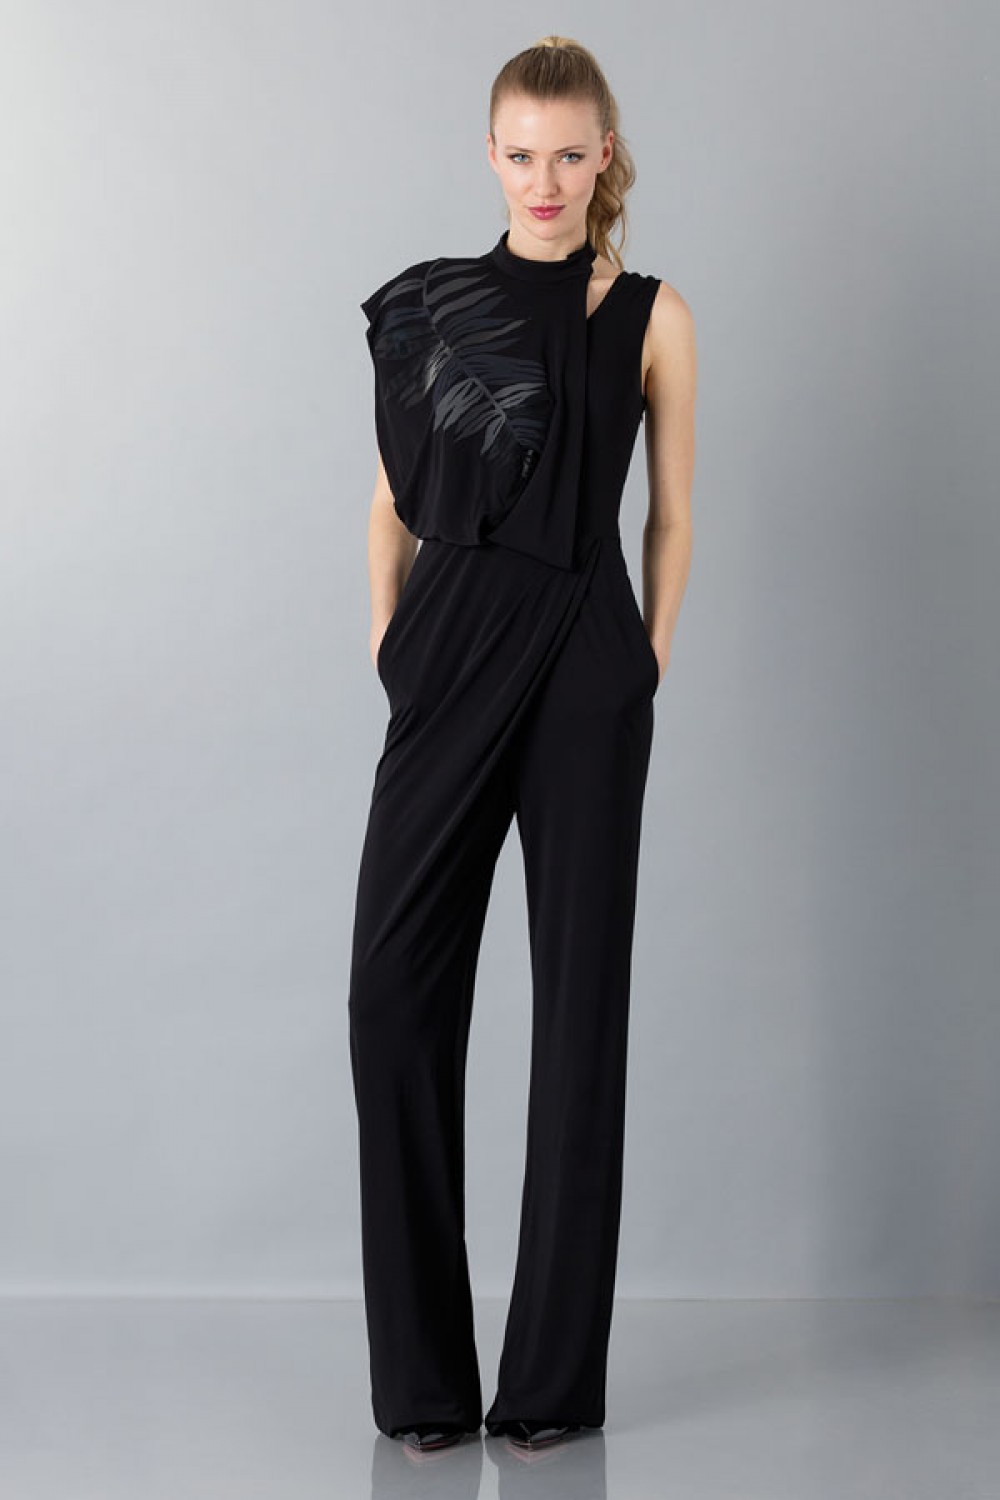 Noleggio Abbigliamento Firmato - Jumpsuit nera con collo asimmetrico - Vionnet - Drexcode -1